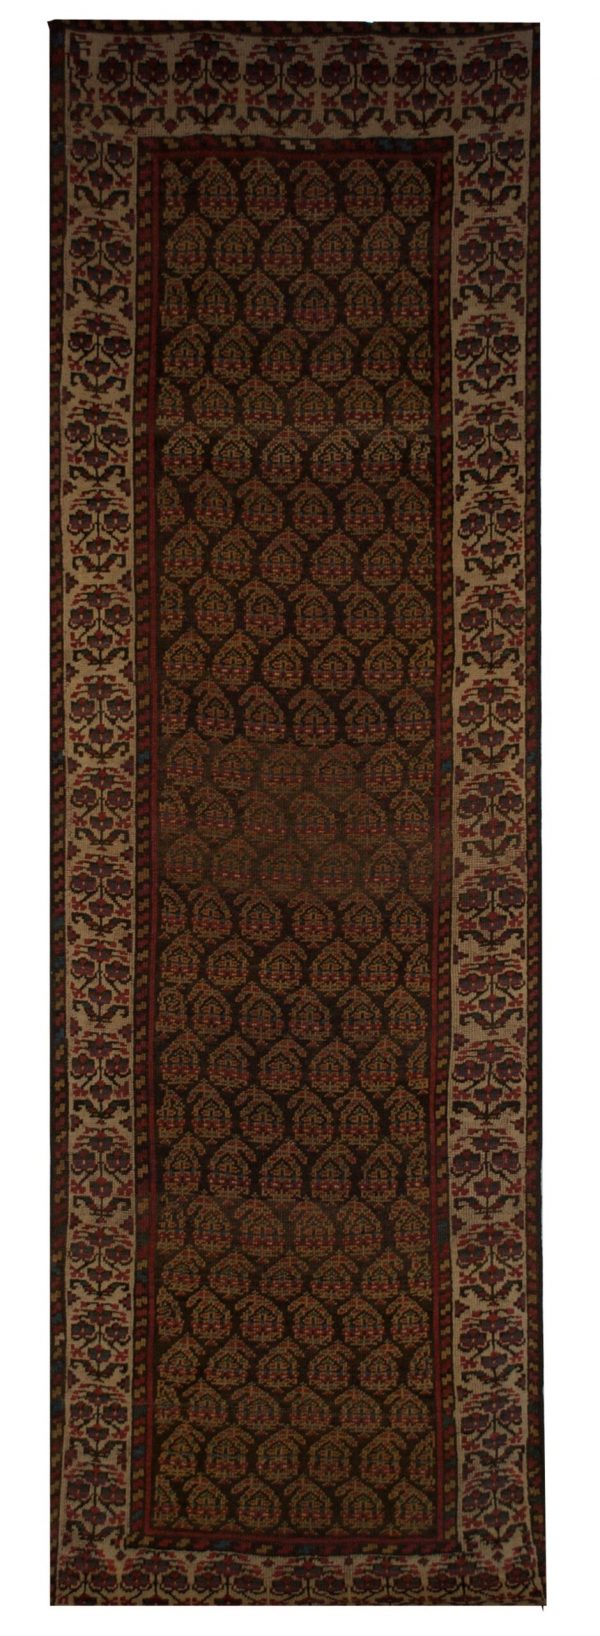 Antique Persian Malayer 3' 1" x 10' - Shabahang Royal Carpet